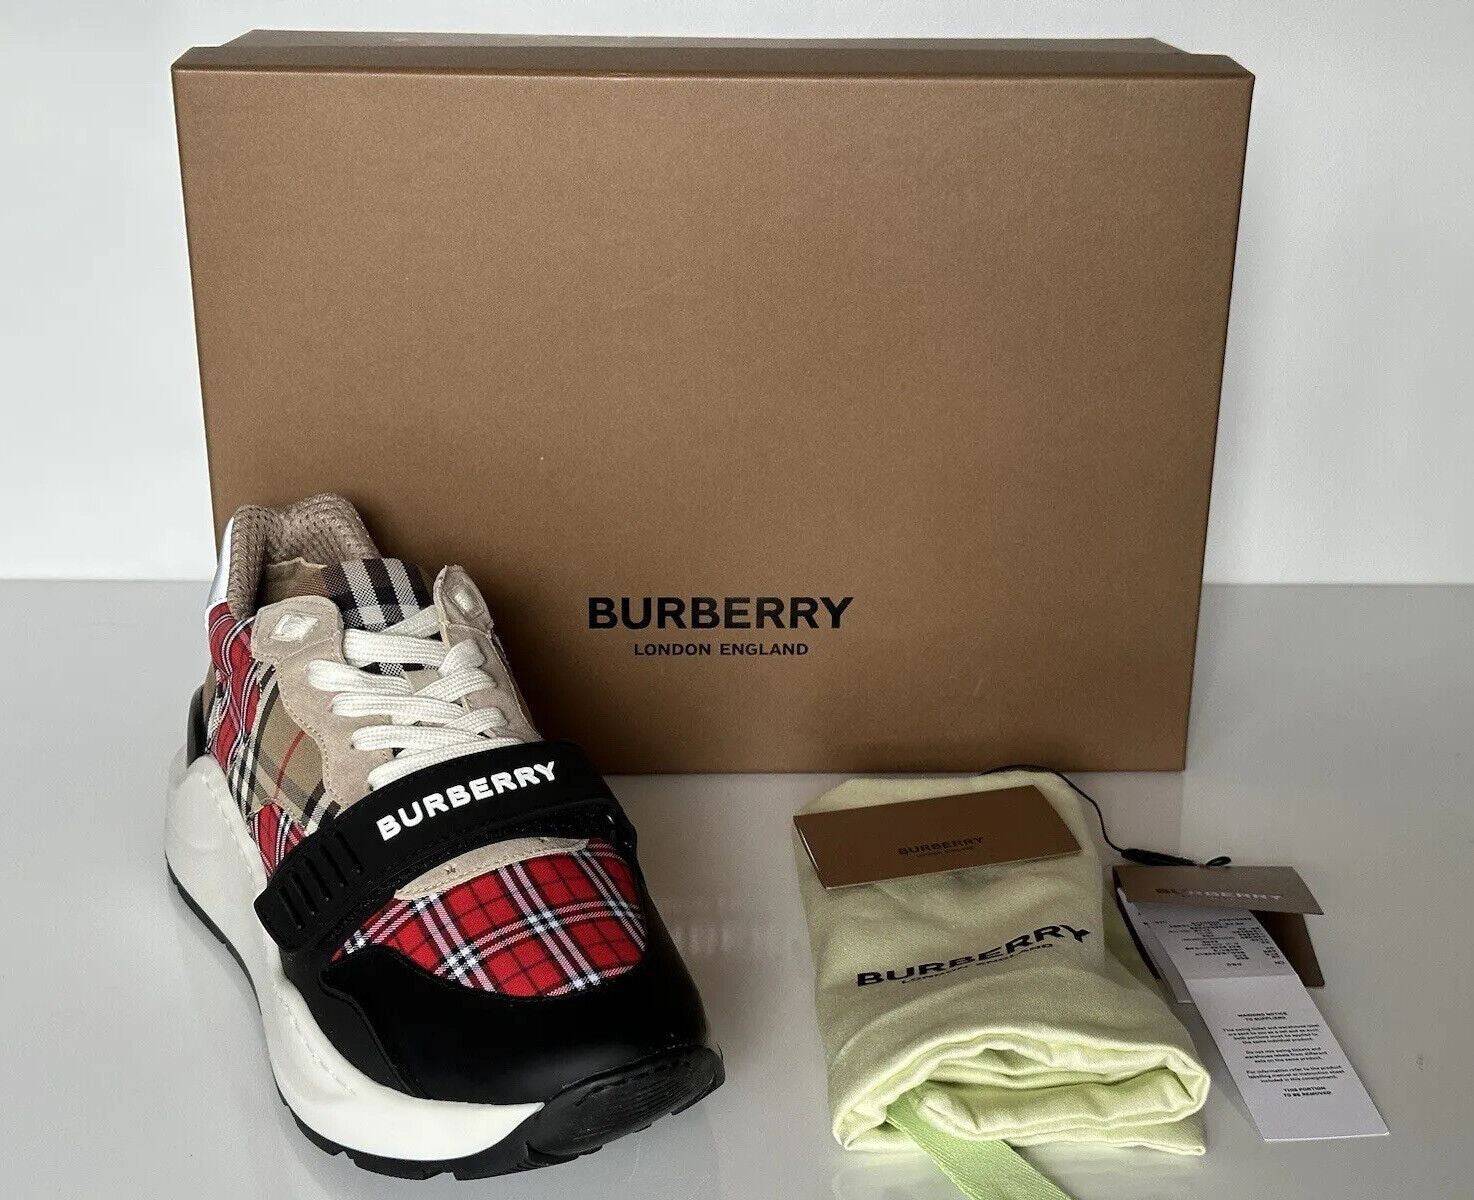 Мужские разноцветные кроссовки Burberry Ramsey стоимостью 790 долларов США 9,5 США (42,5) 8048632 Италия 